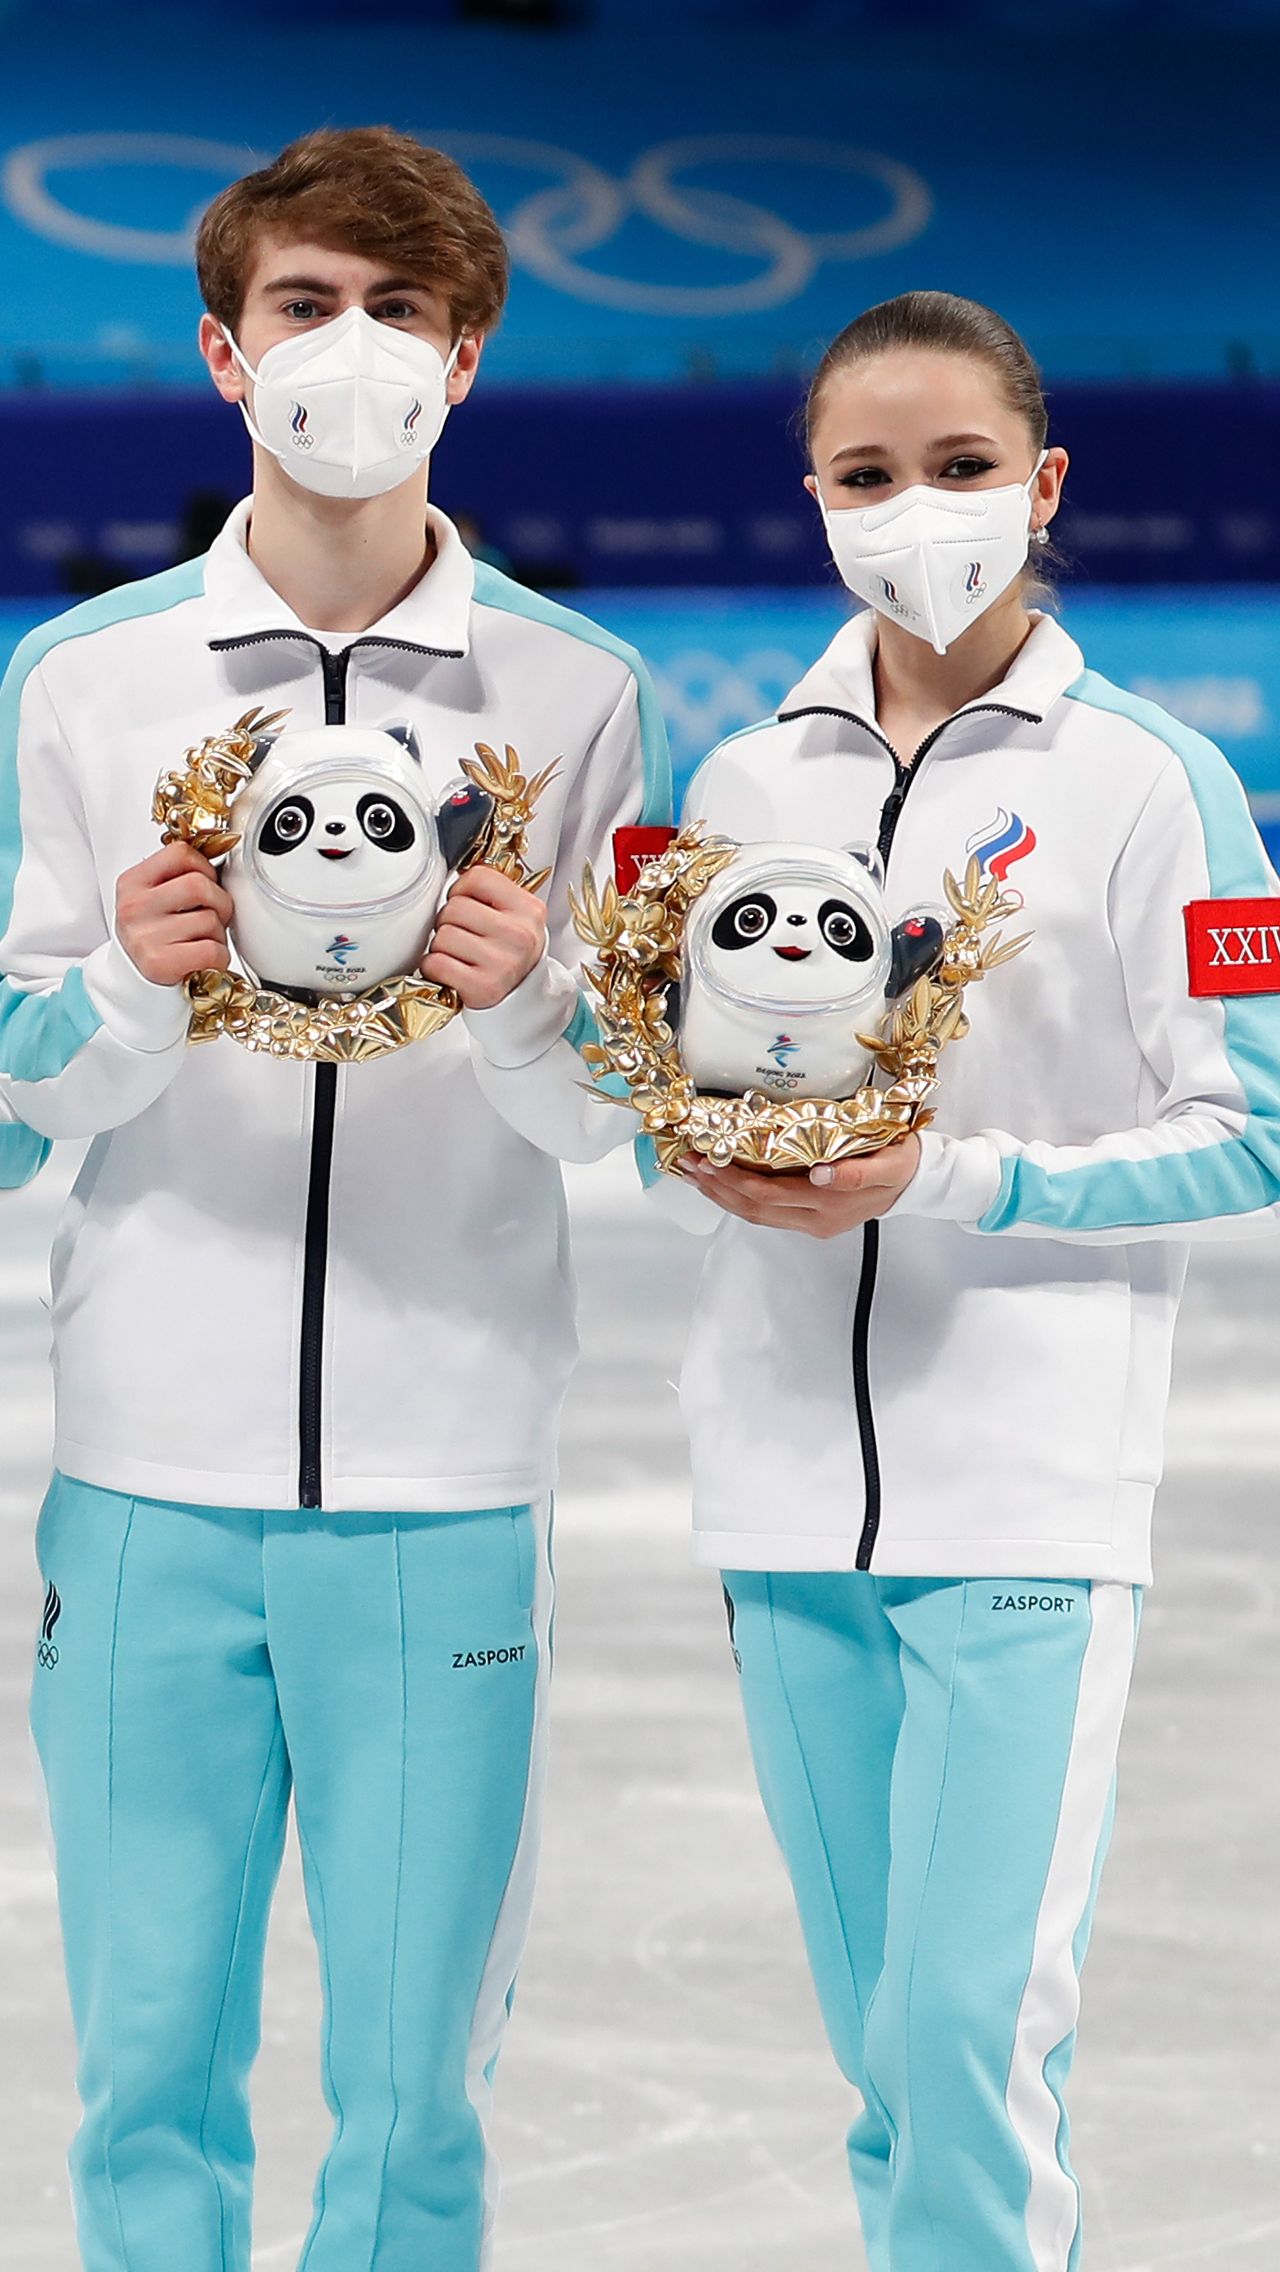 Камила Валиева и Марк Кондратюк выиграли золото в командном турнире. За медаль наивысшего достоинства они получат по 4 миллиона рублей. 